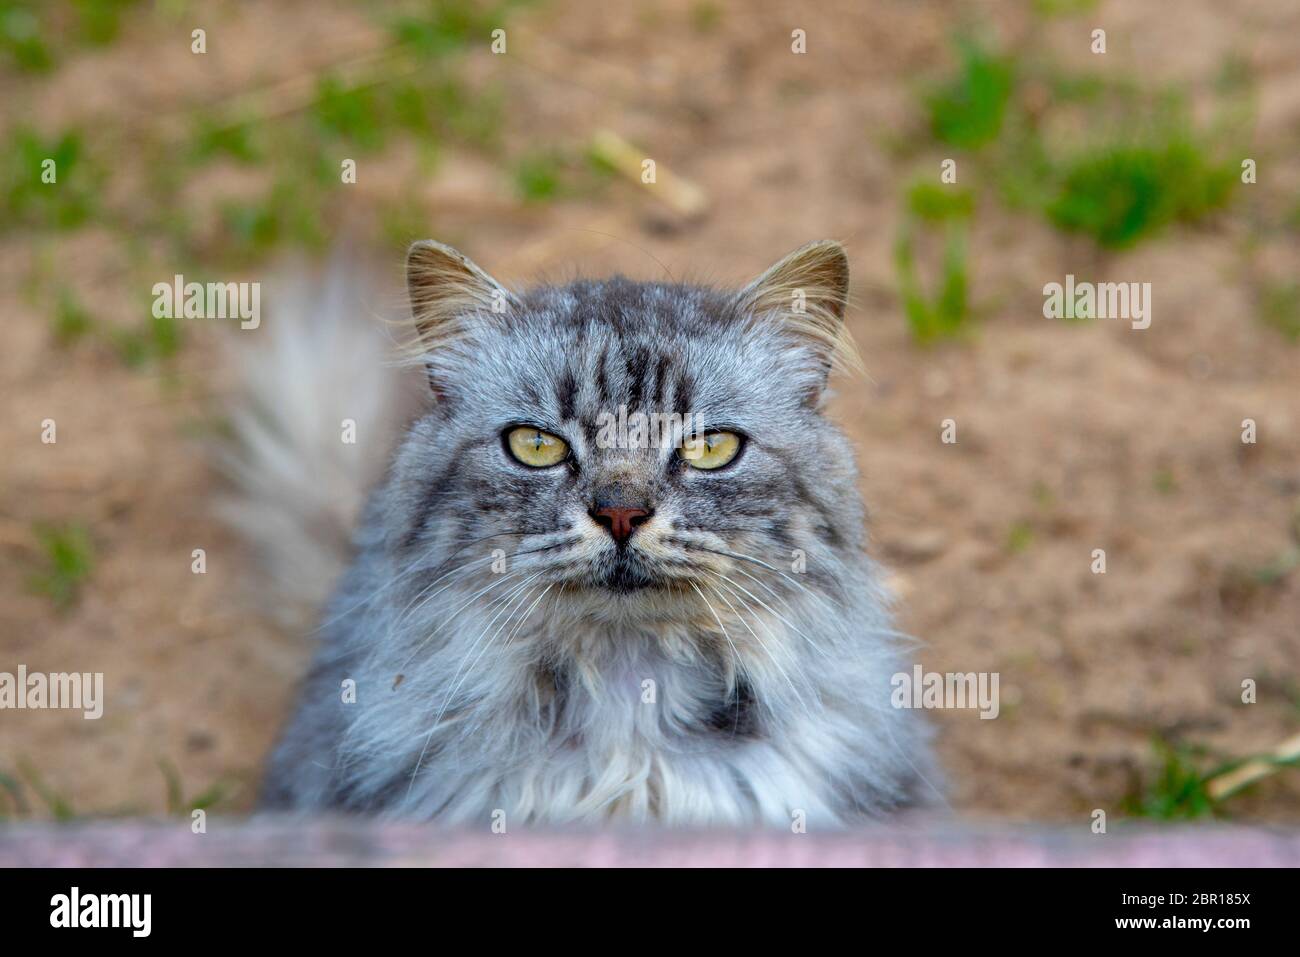 Ritratto di un gatto furry con occhi enormi. Foto Stock